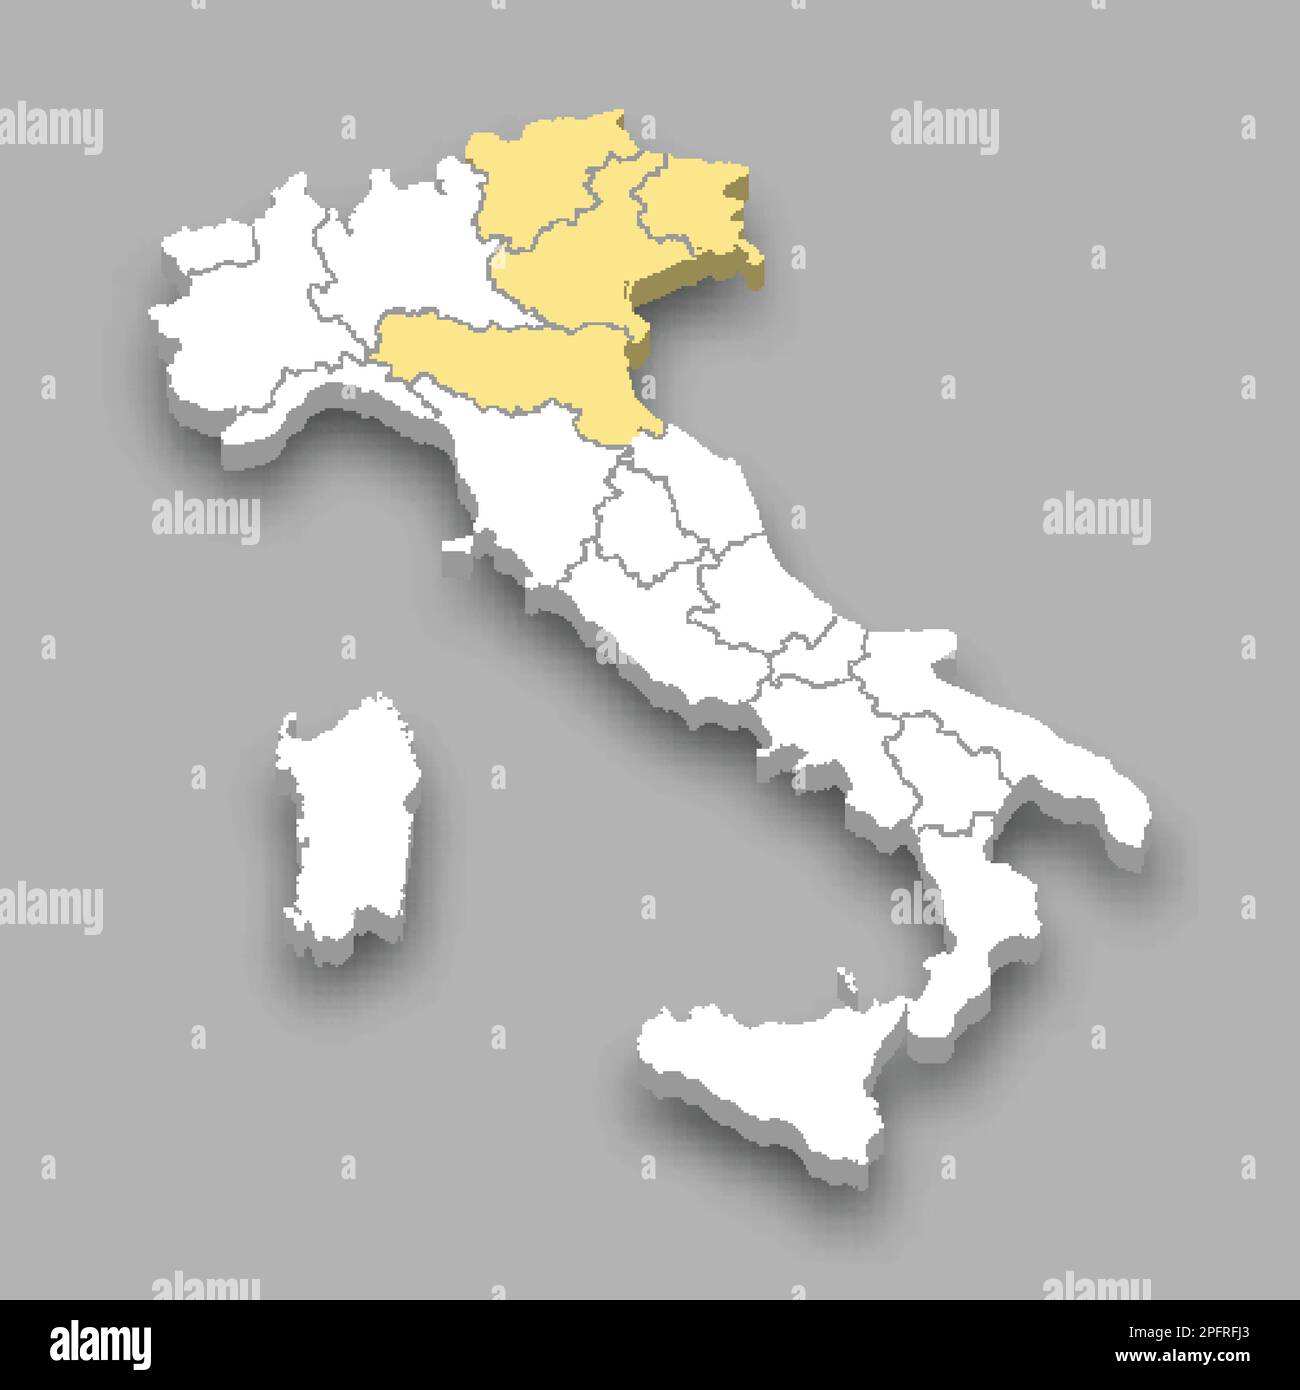 Lage der Region Nordosten innerhalb der isometrischen 3D-Karte Italiens Stock Vektor